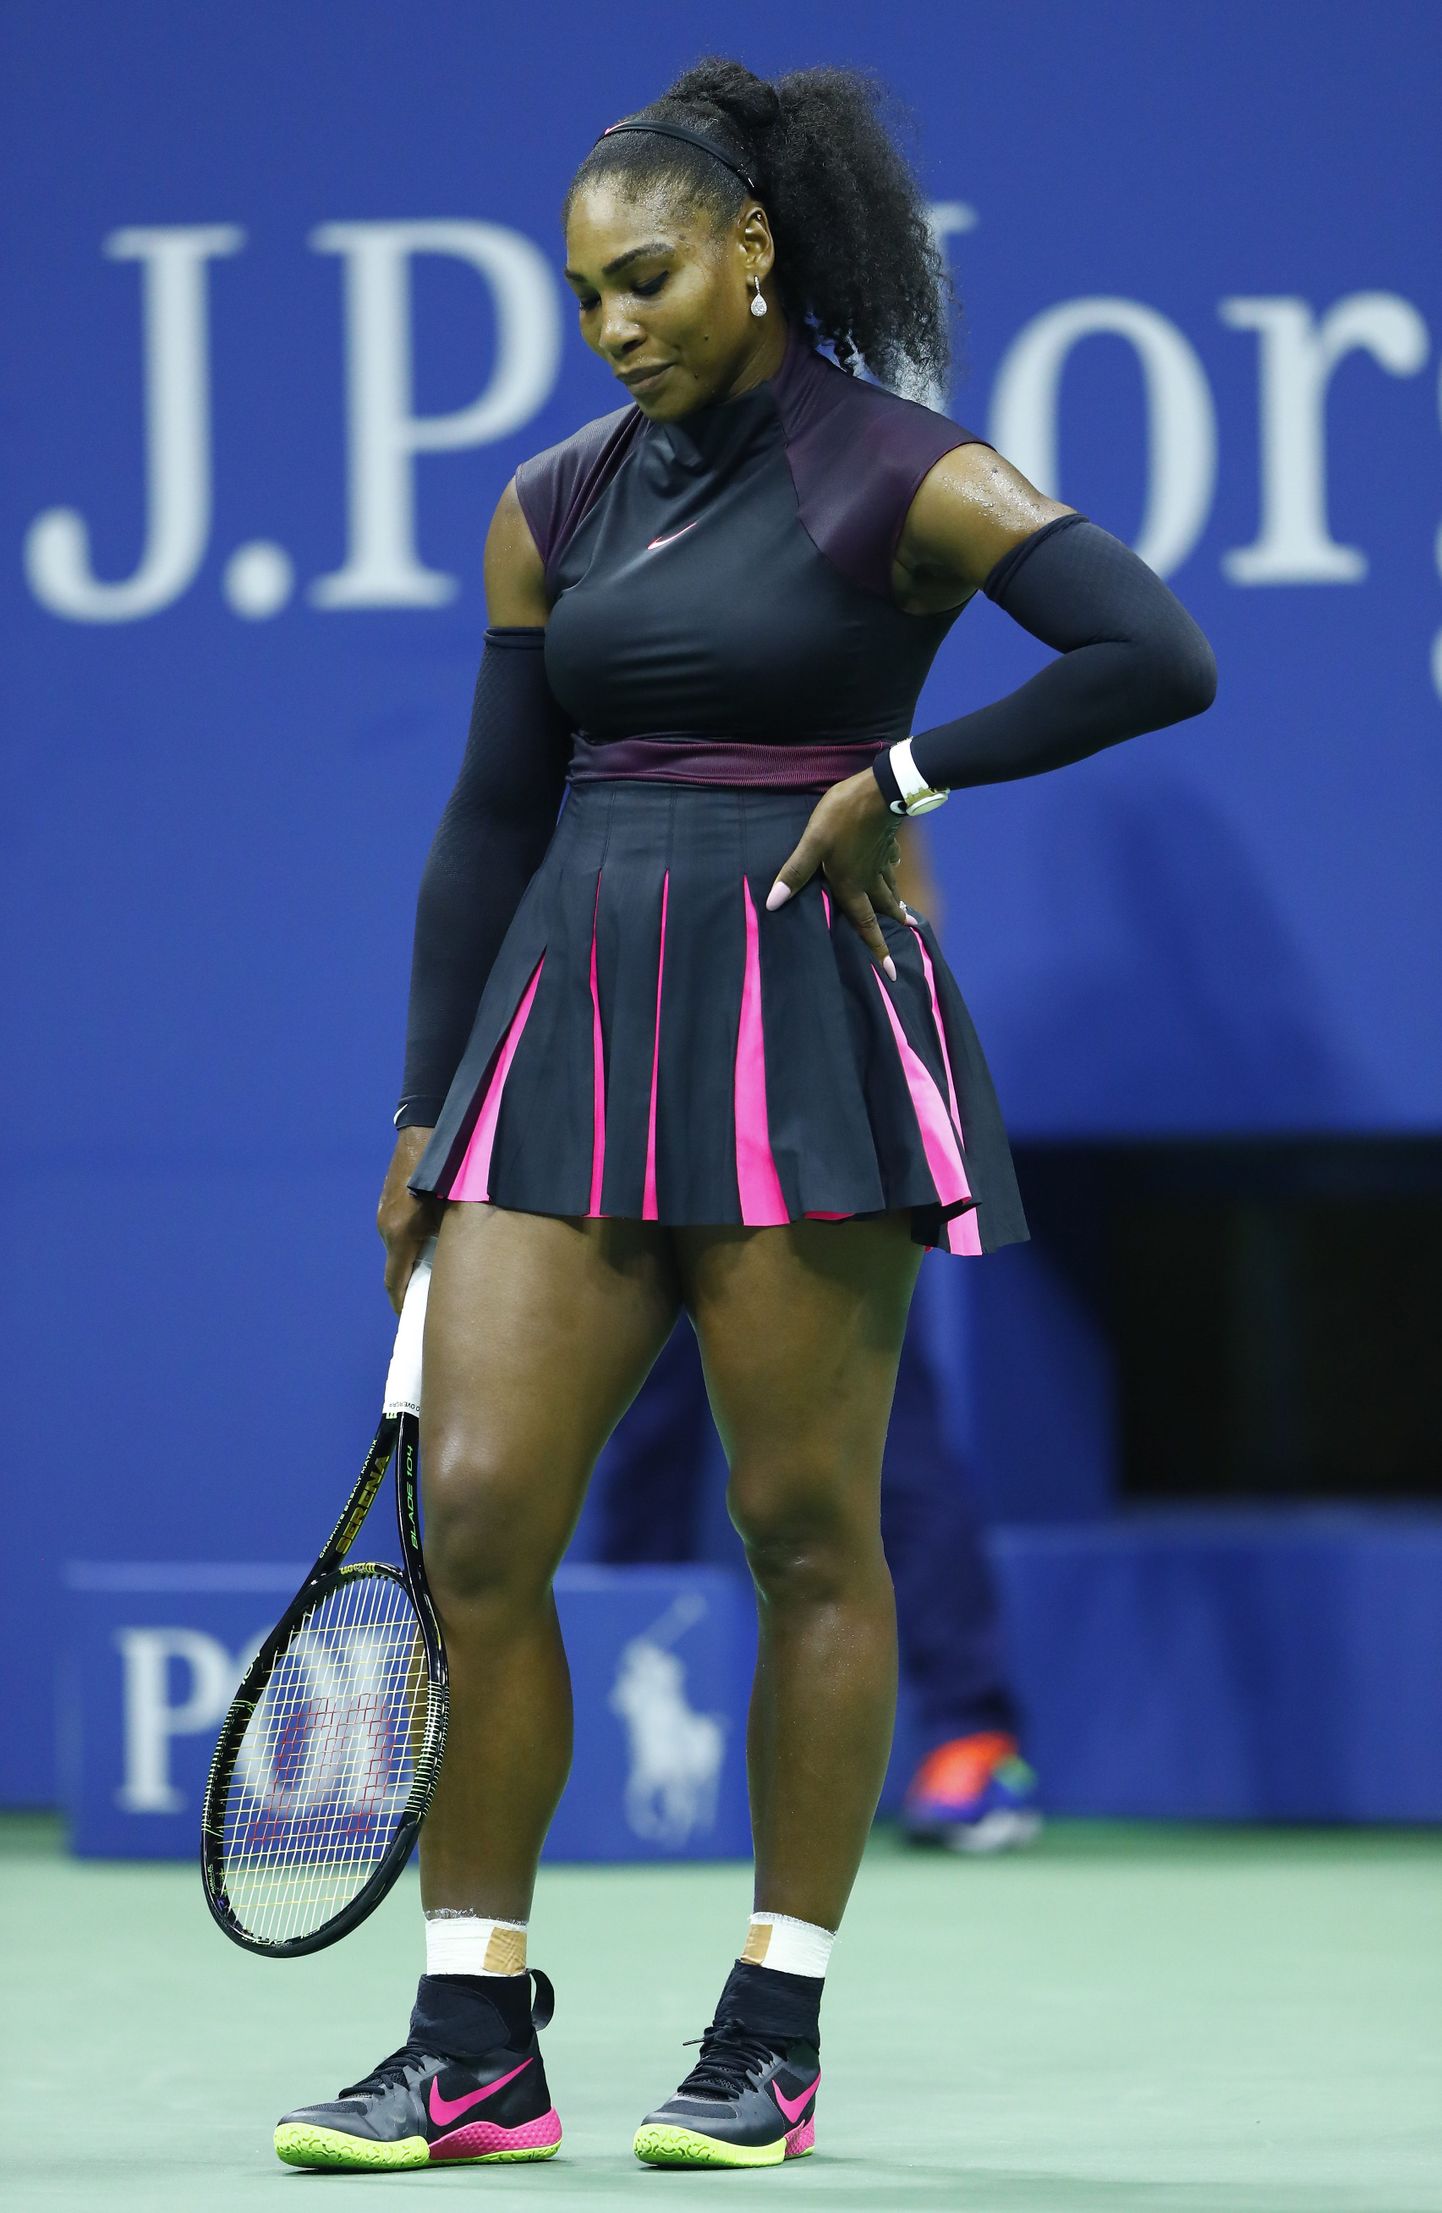 Pettunud Serena Williams langes välja nii USA lahtistelt kui jäi üle mitmete aastate ilma maailma esireketi tiitlist.